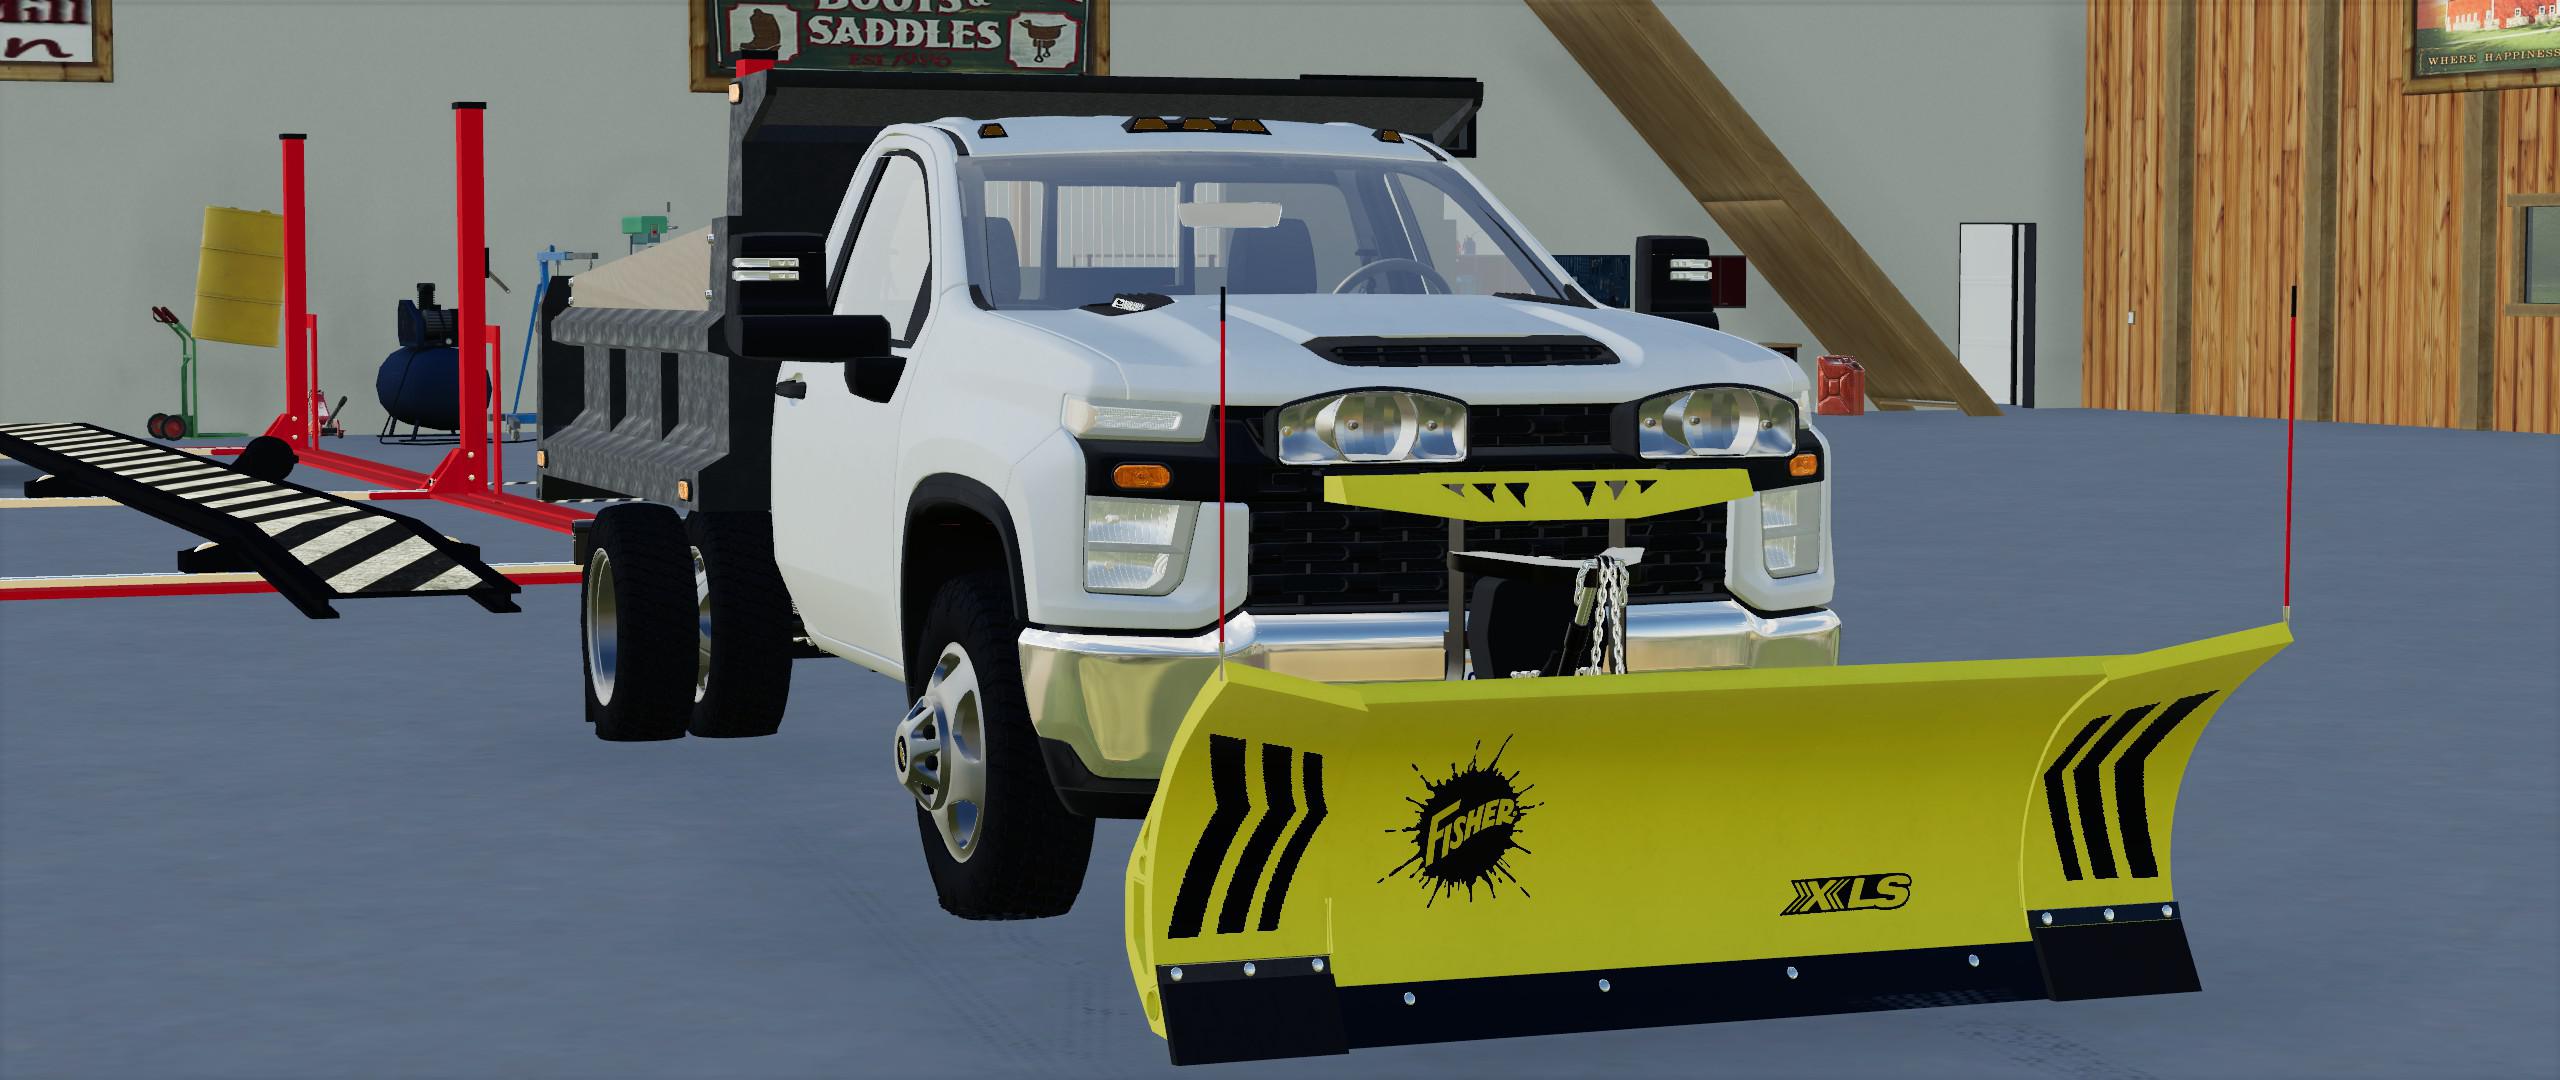 FS19 - 2020 Chevy 3500HD Single Cab Dump Truck V1.0 | Farming Simulator